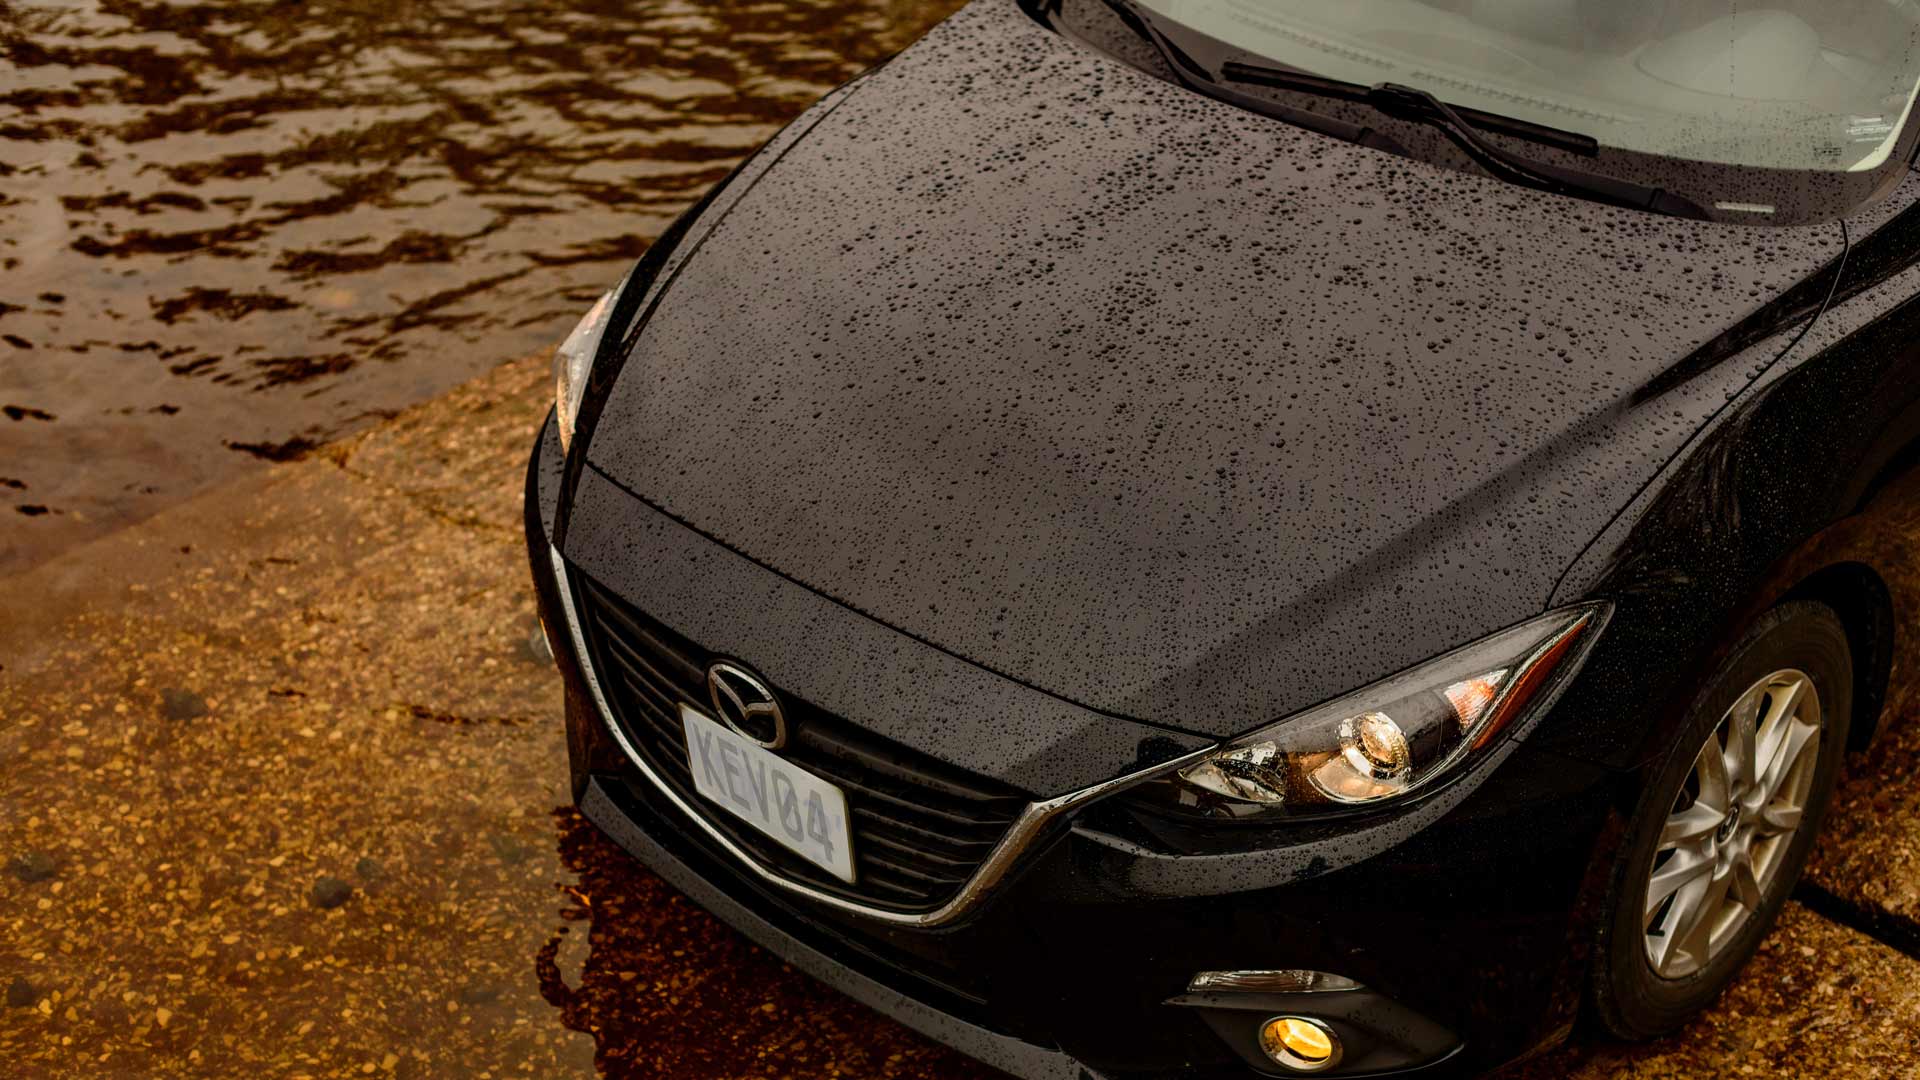 Small black car in rain